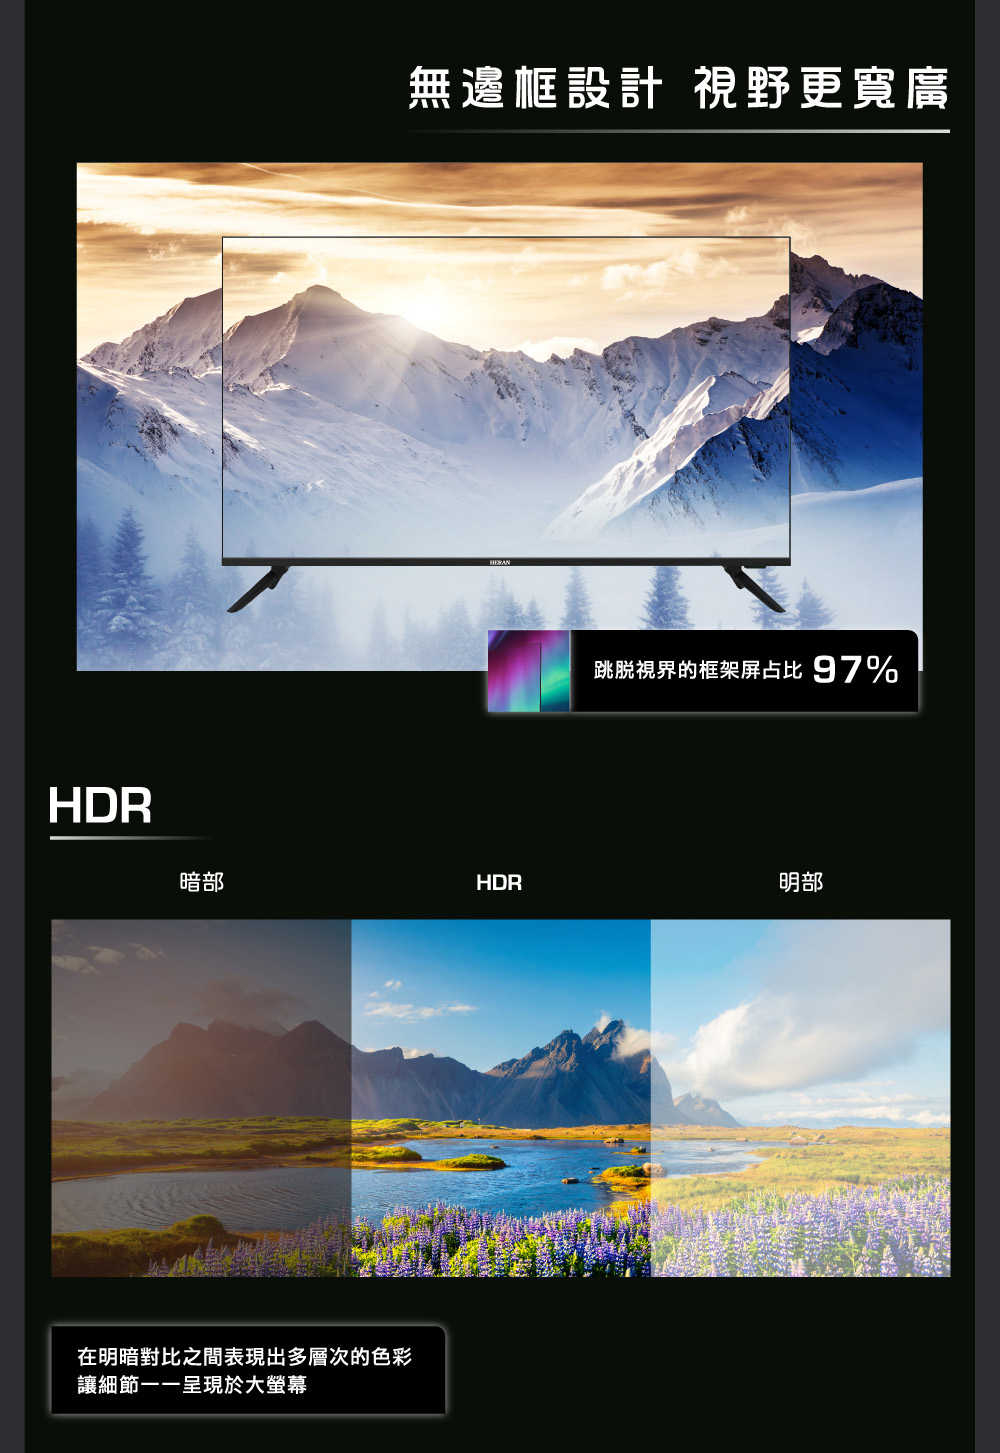 【HERAN 禾聯】50 吋 4K數位液晶顯示器 螢幕 杜比音效 無邊框設計 HD-50MG1